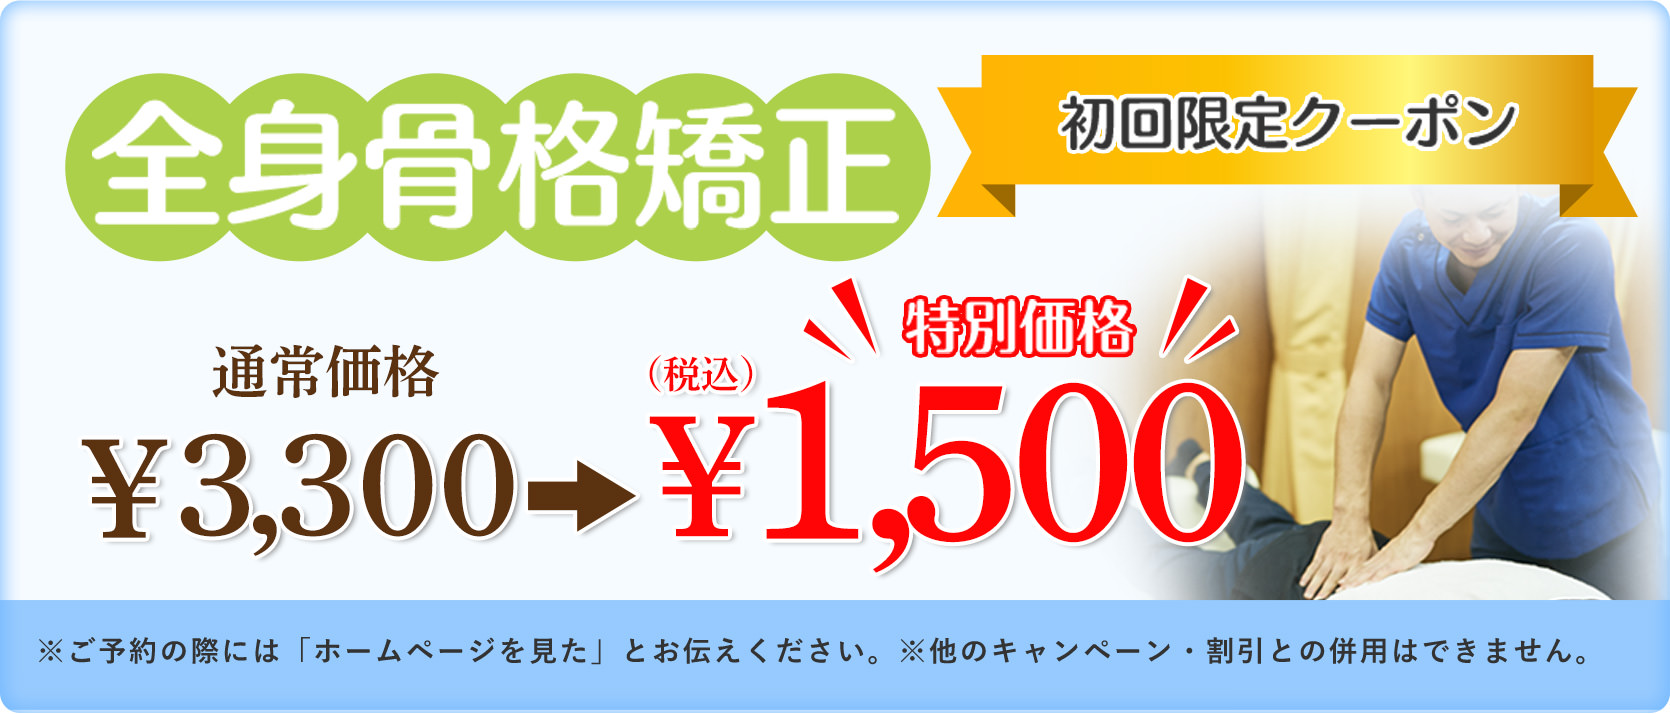 全身骨格矯正（初回限定クーポン）通常価格¥3,300 → 特別価格¥1,500